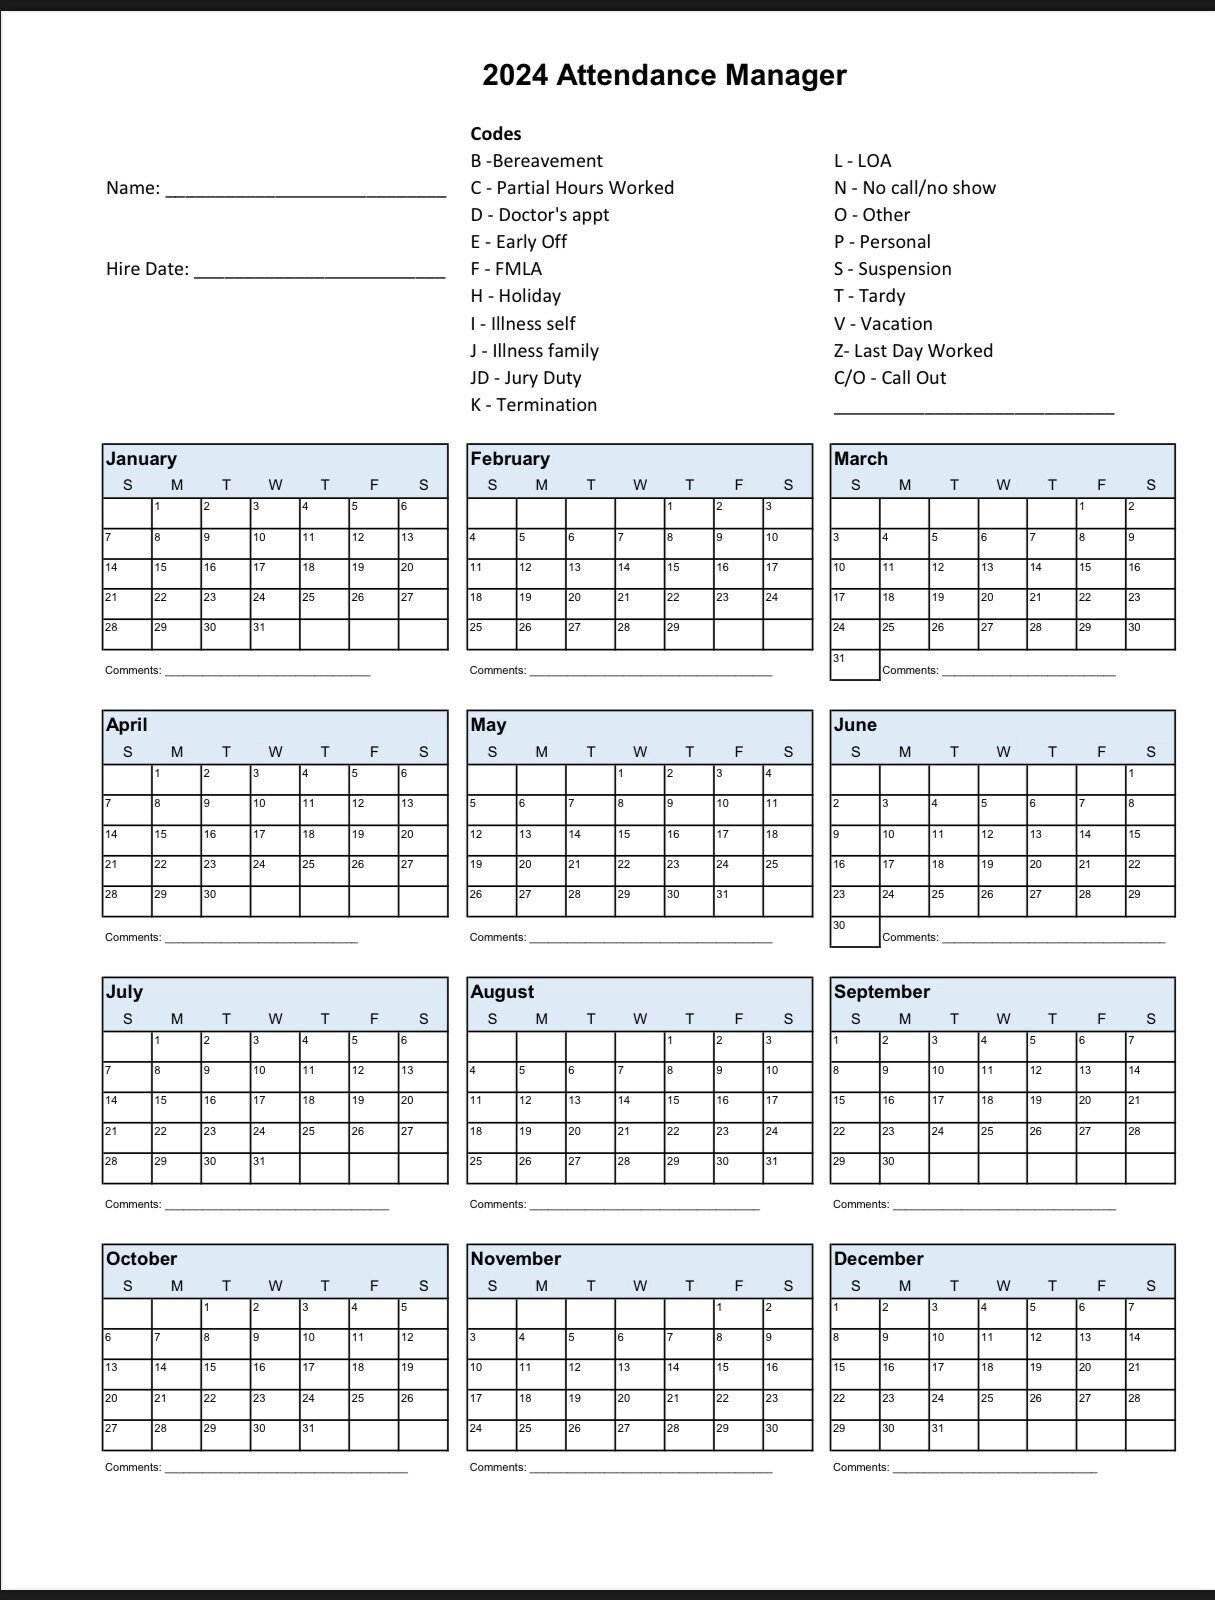 2024 Employee School Attendance Tracker Calendar, Employee intended for 2024 Employee Attendance Calendar